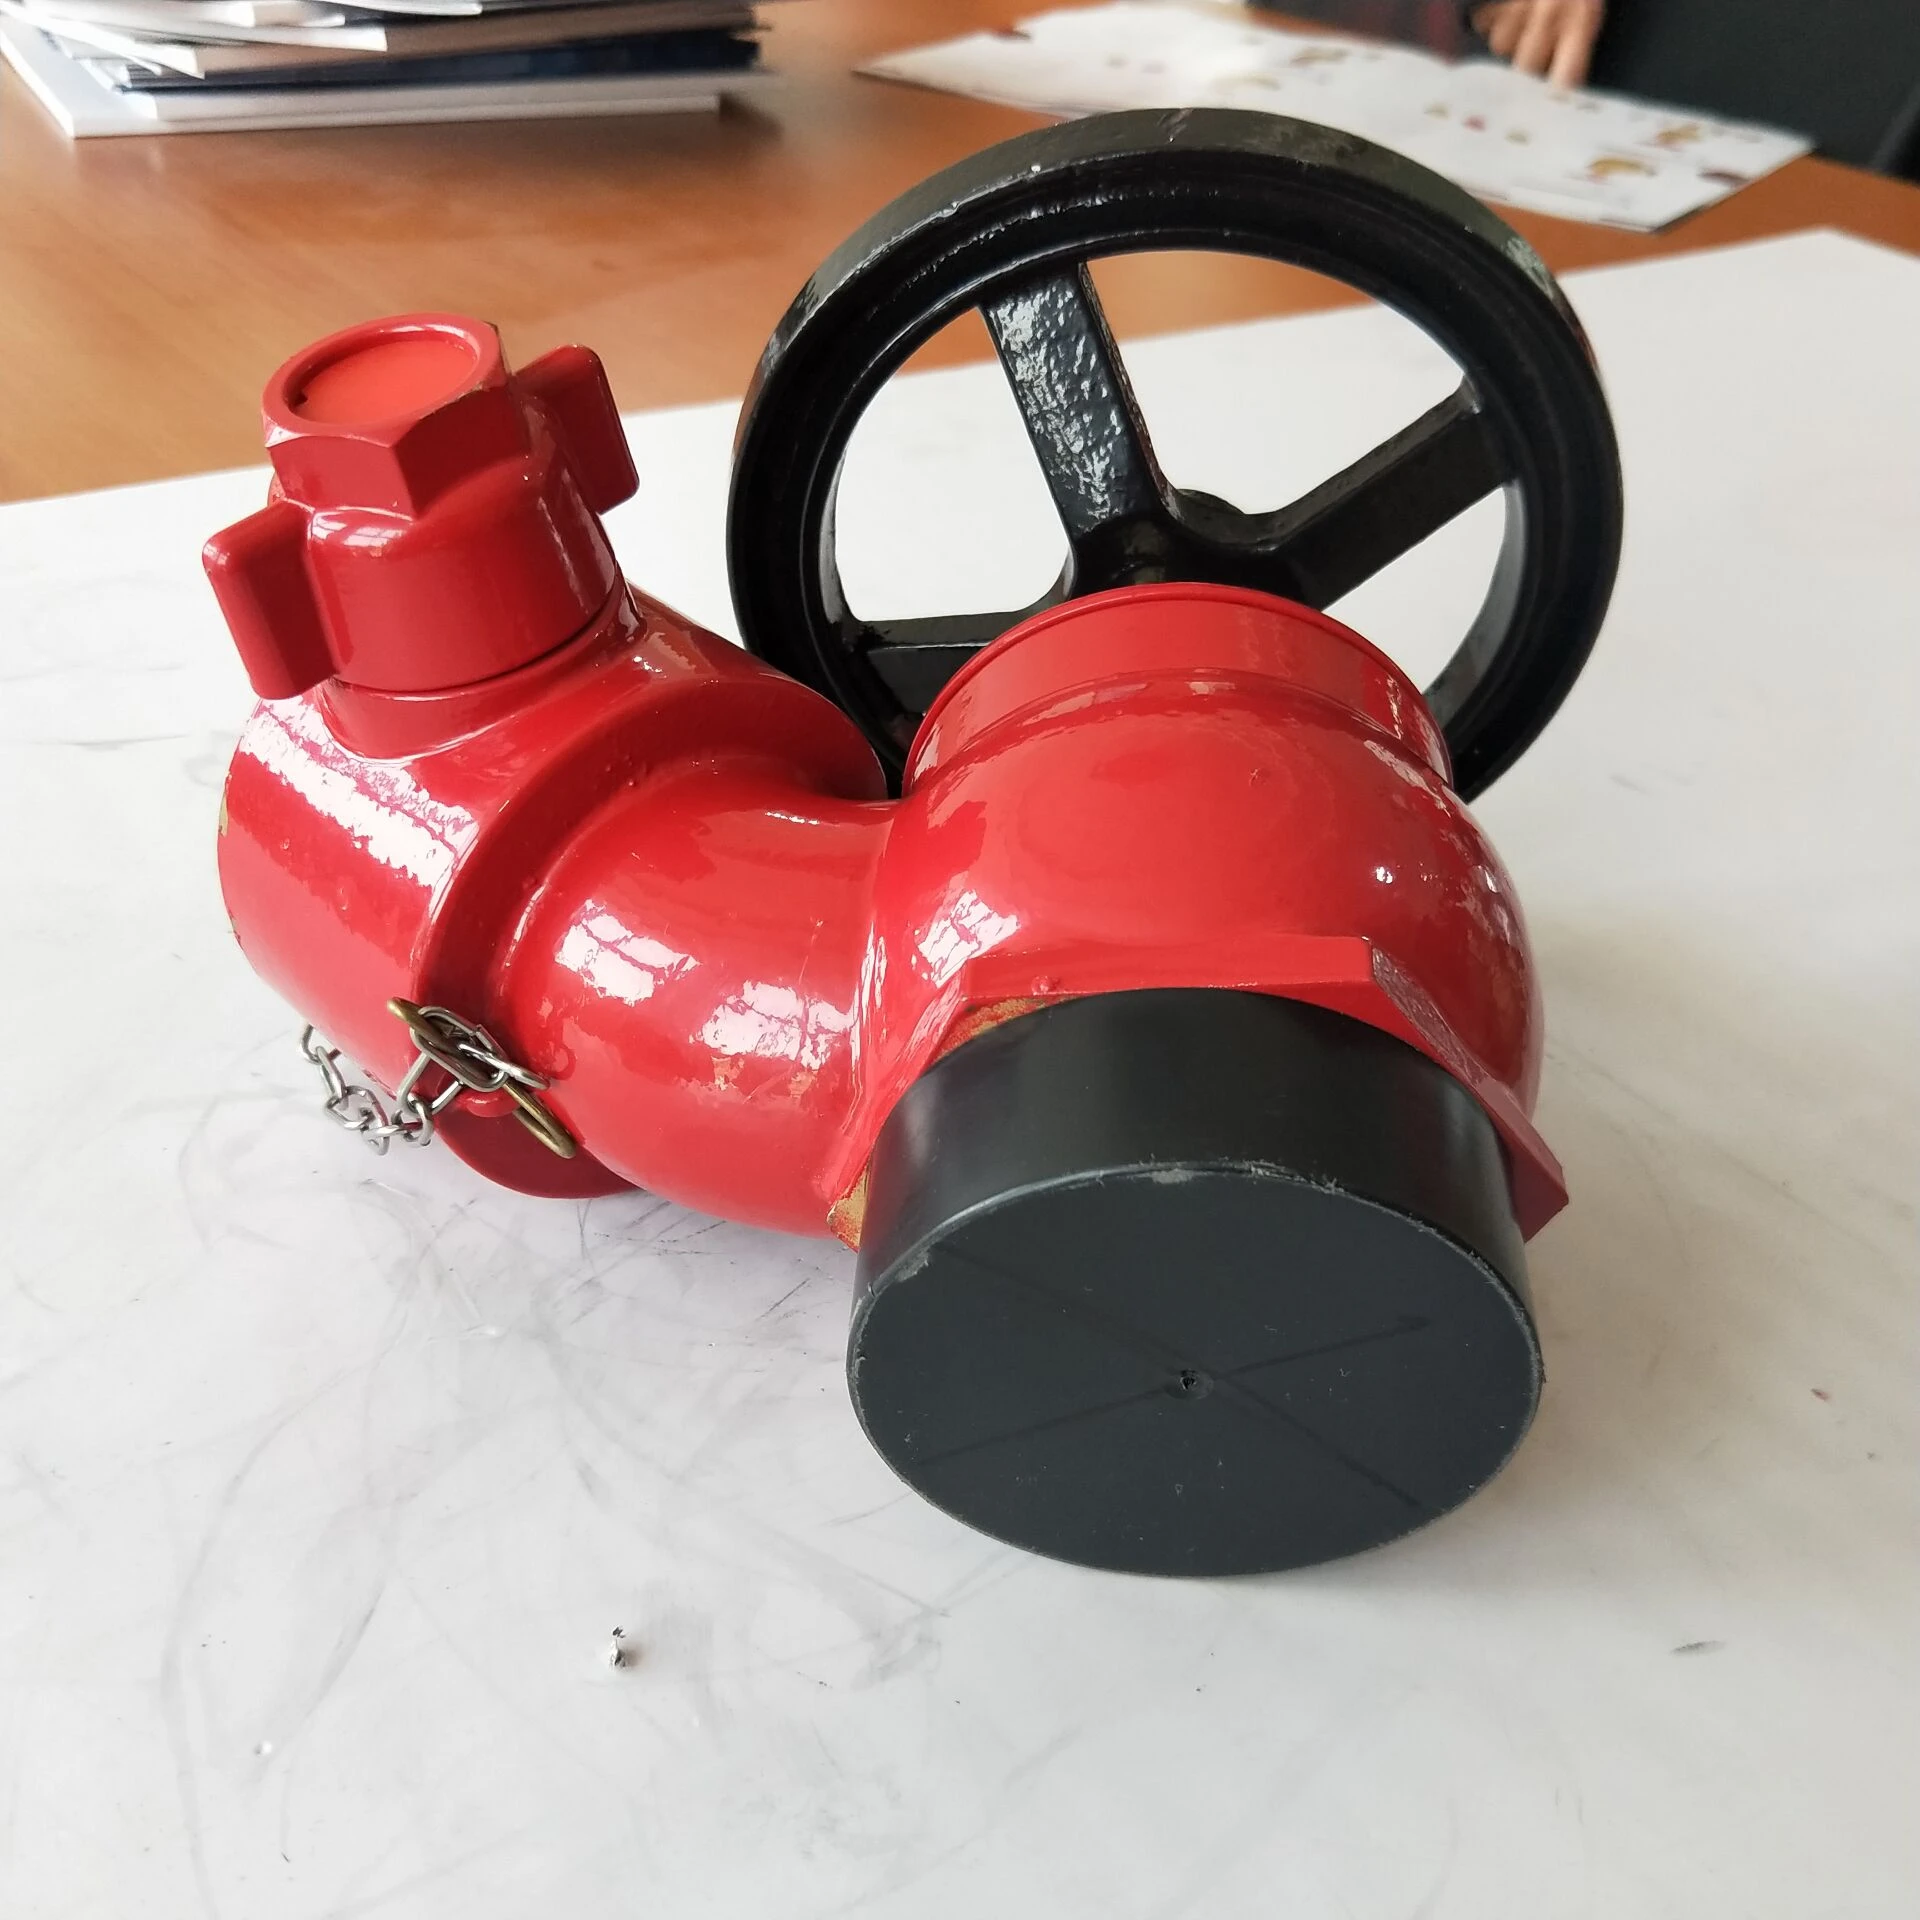 Factory fire valve  brass 2.5 inch used for firefighting equipment brass landing valve